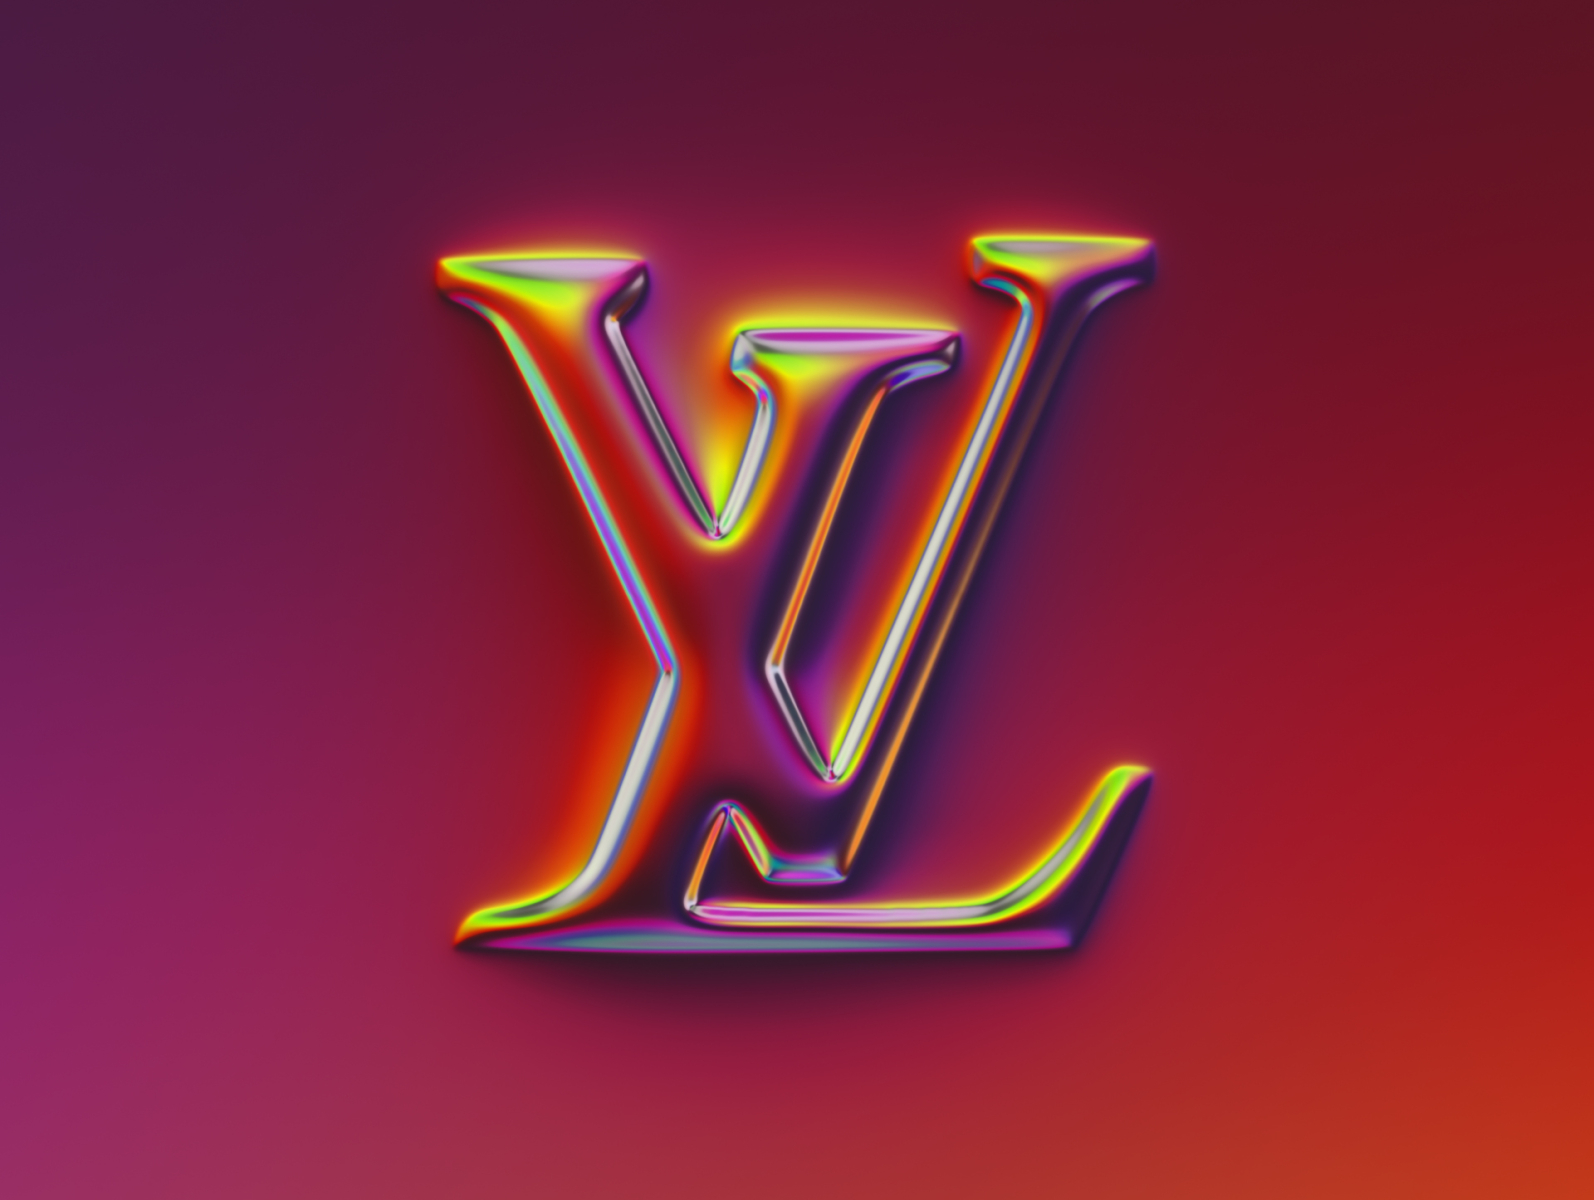 LV (Louis Vuitton), Logo Neon Sign